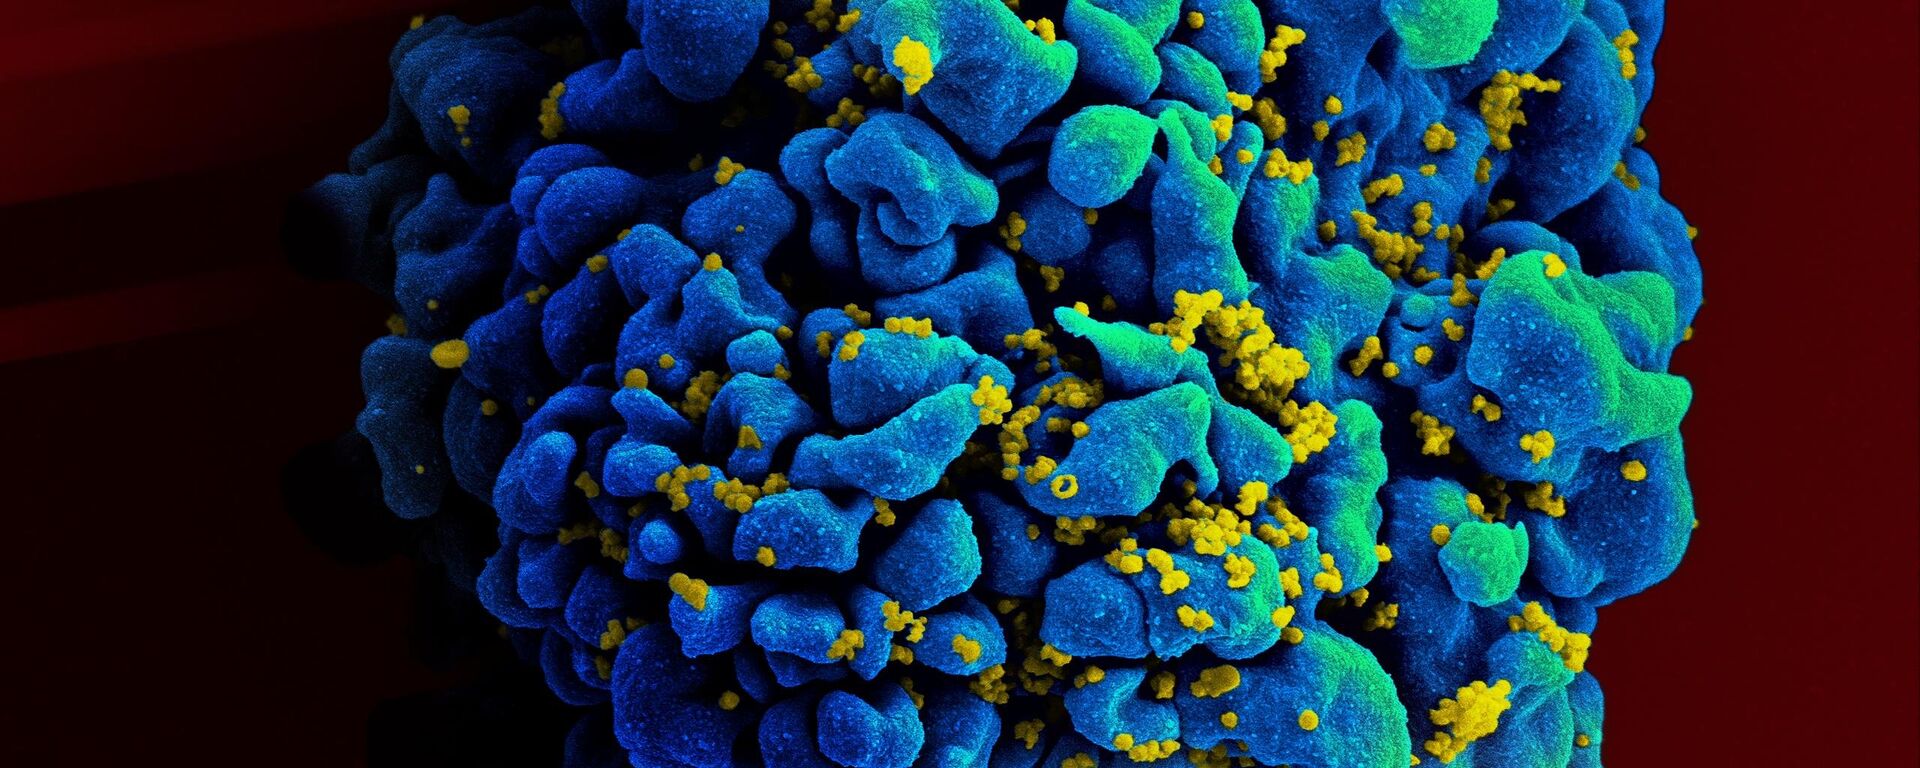 Una célula T atacada por el virus del VIH - Sputnik Mundo, 1920, 02.10.2021